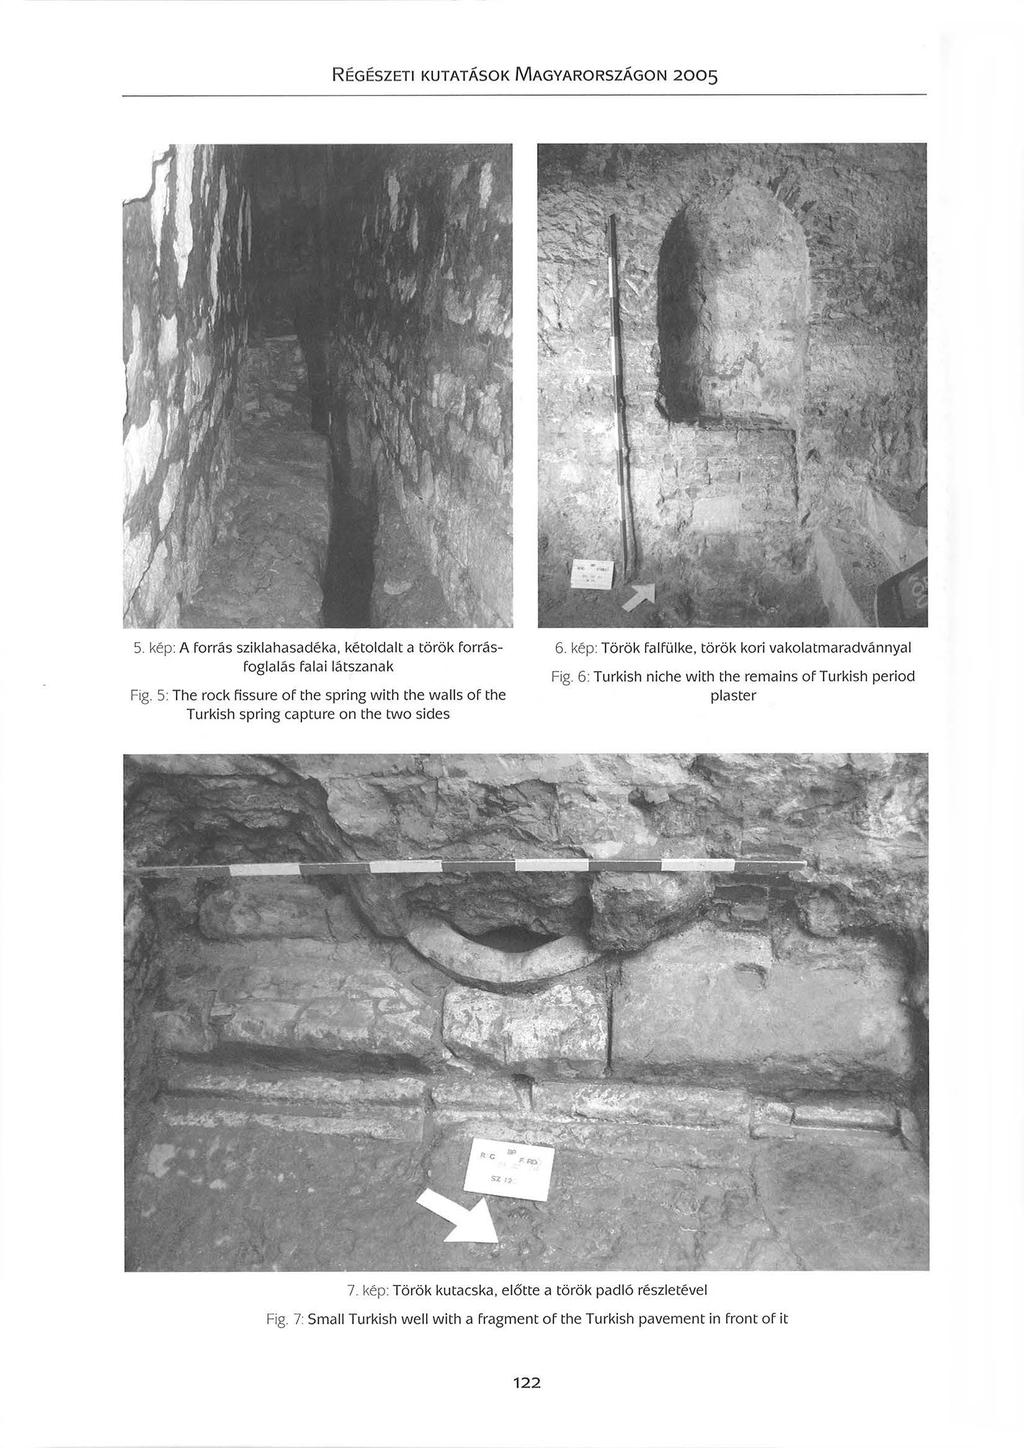 5. kép: A forrás sziklahasadéka kétoldalt a török forrásfoglalás falai látszanak Fig. 5: The rock fissure of the spring with the walls of the Turkish spring capture on the two sides 6.